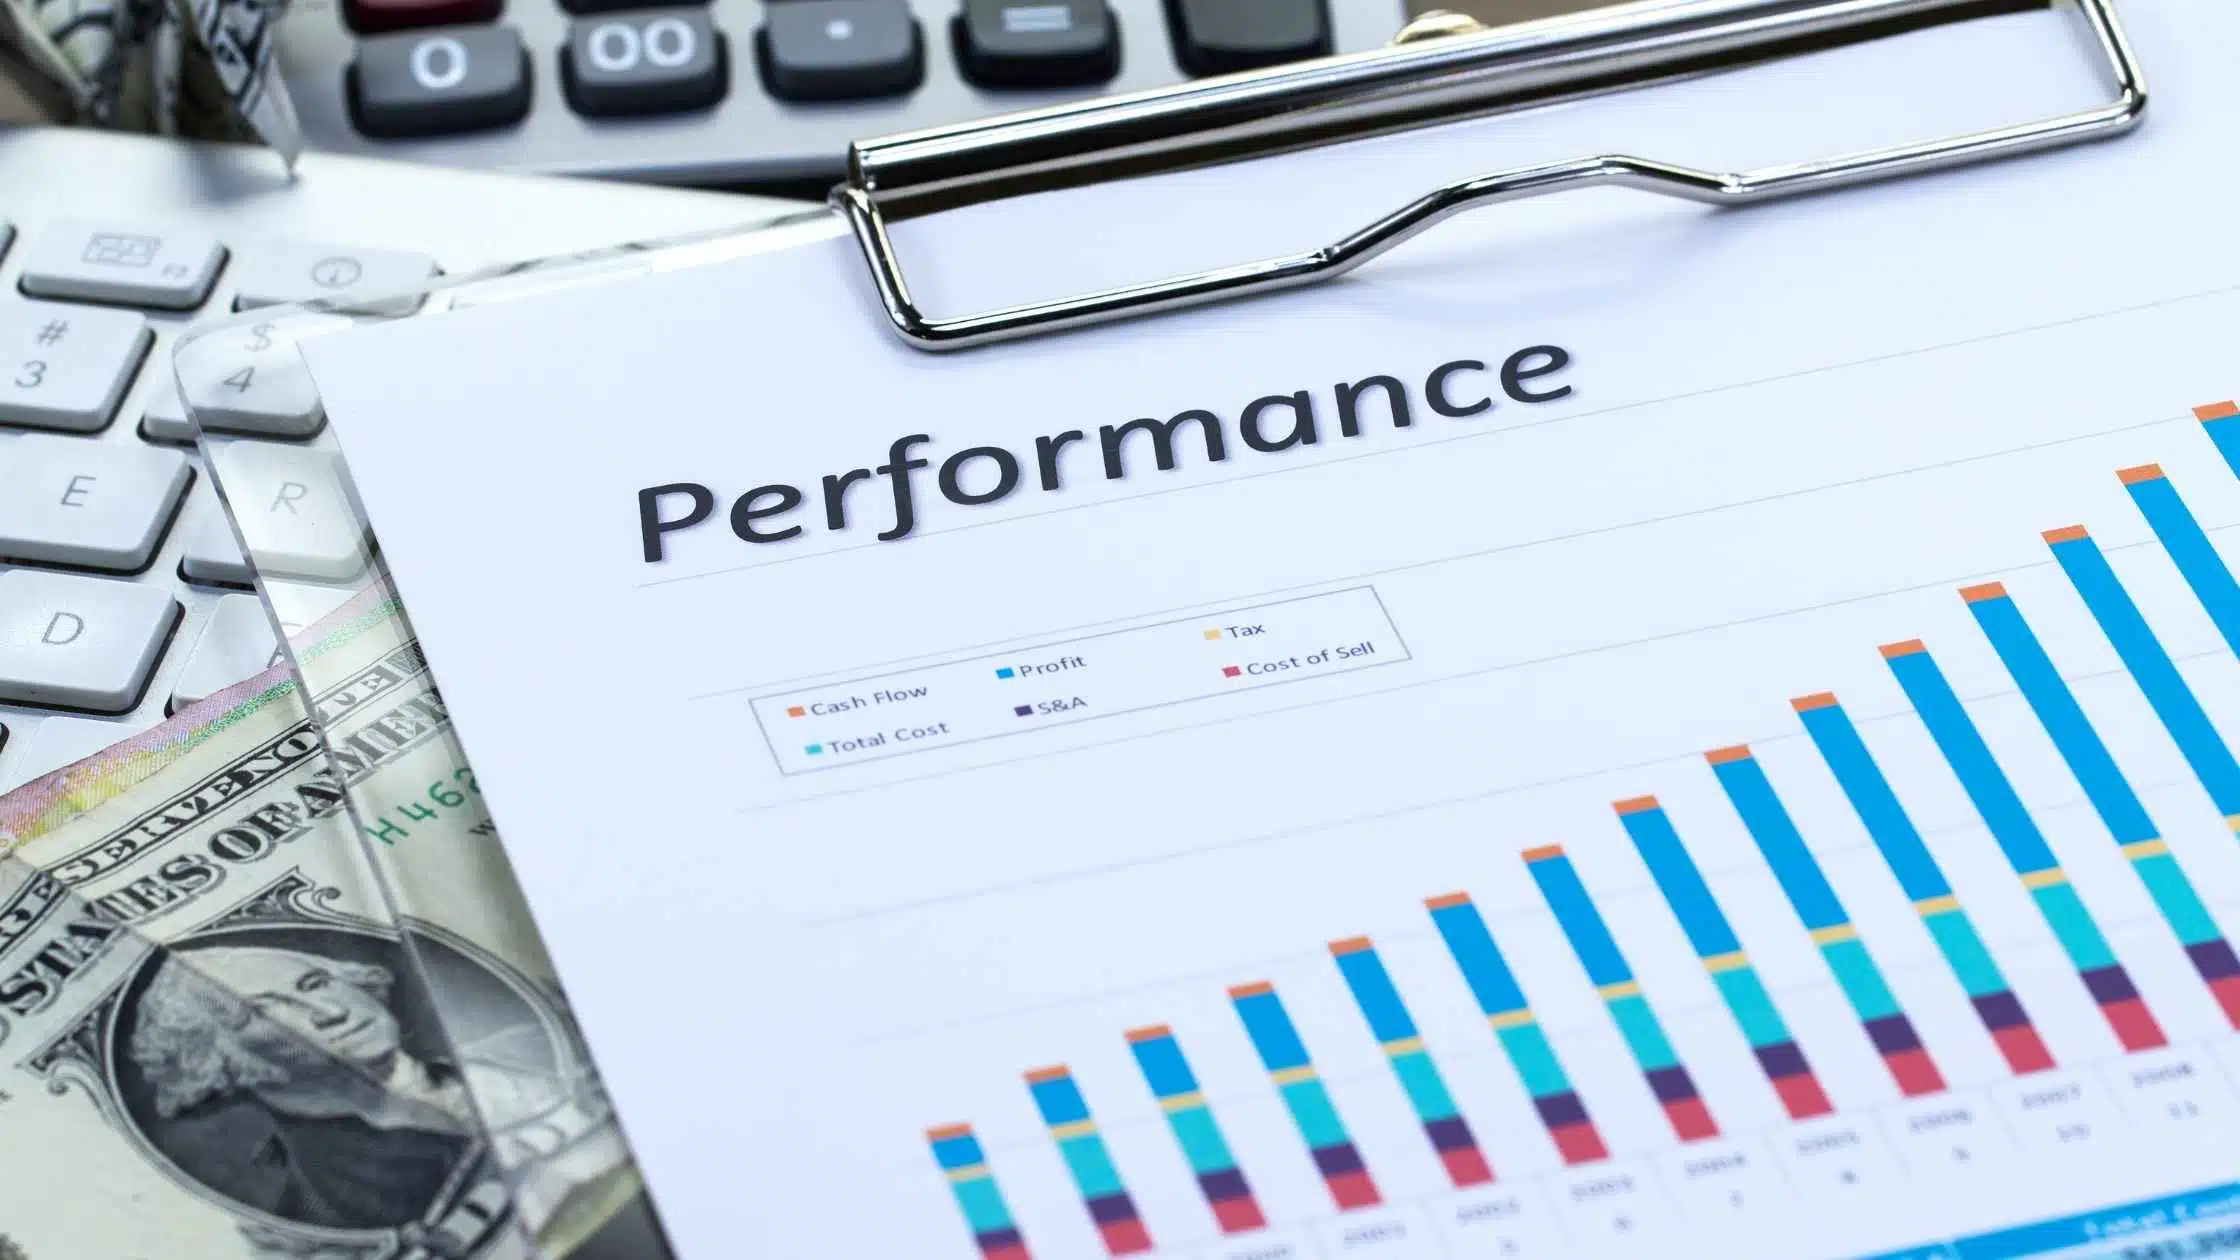  Key performance indicator merupakan sebuah pengukuran yang menilai bagaimana sebuah organisasi mengeksekusi visi strategisnya.